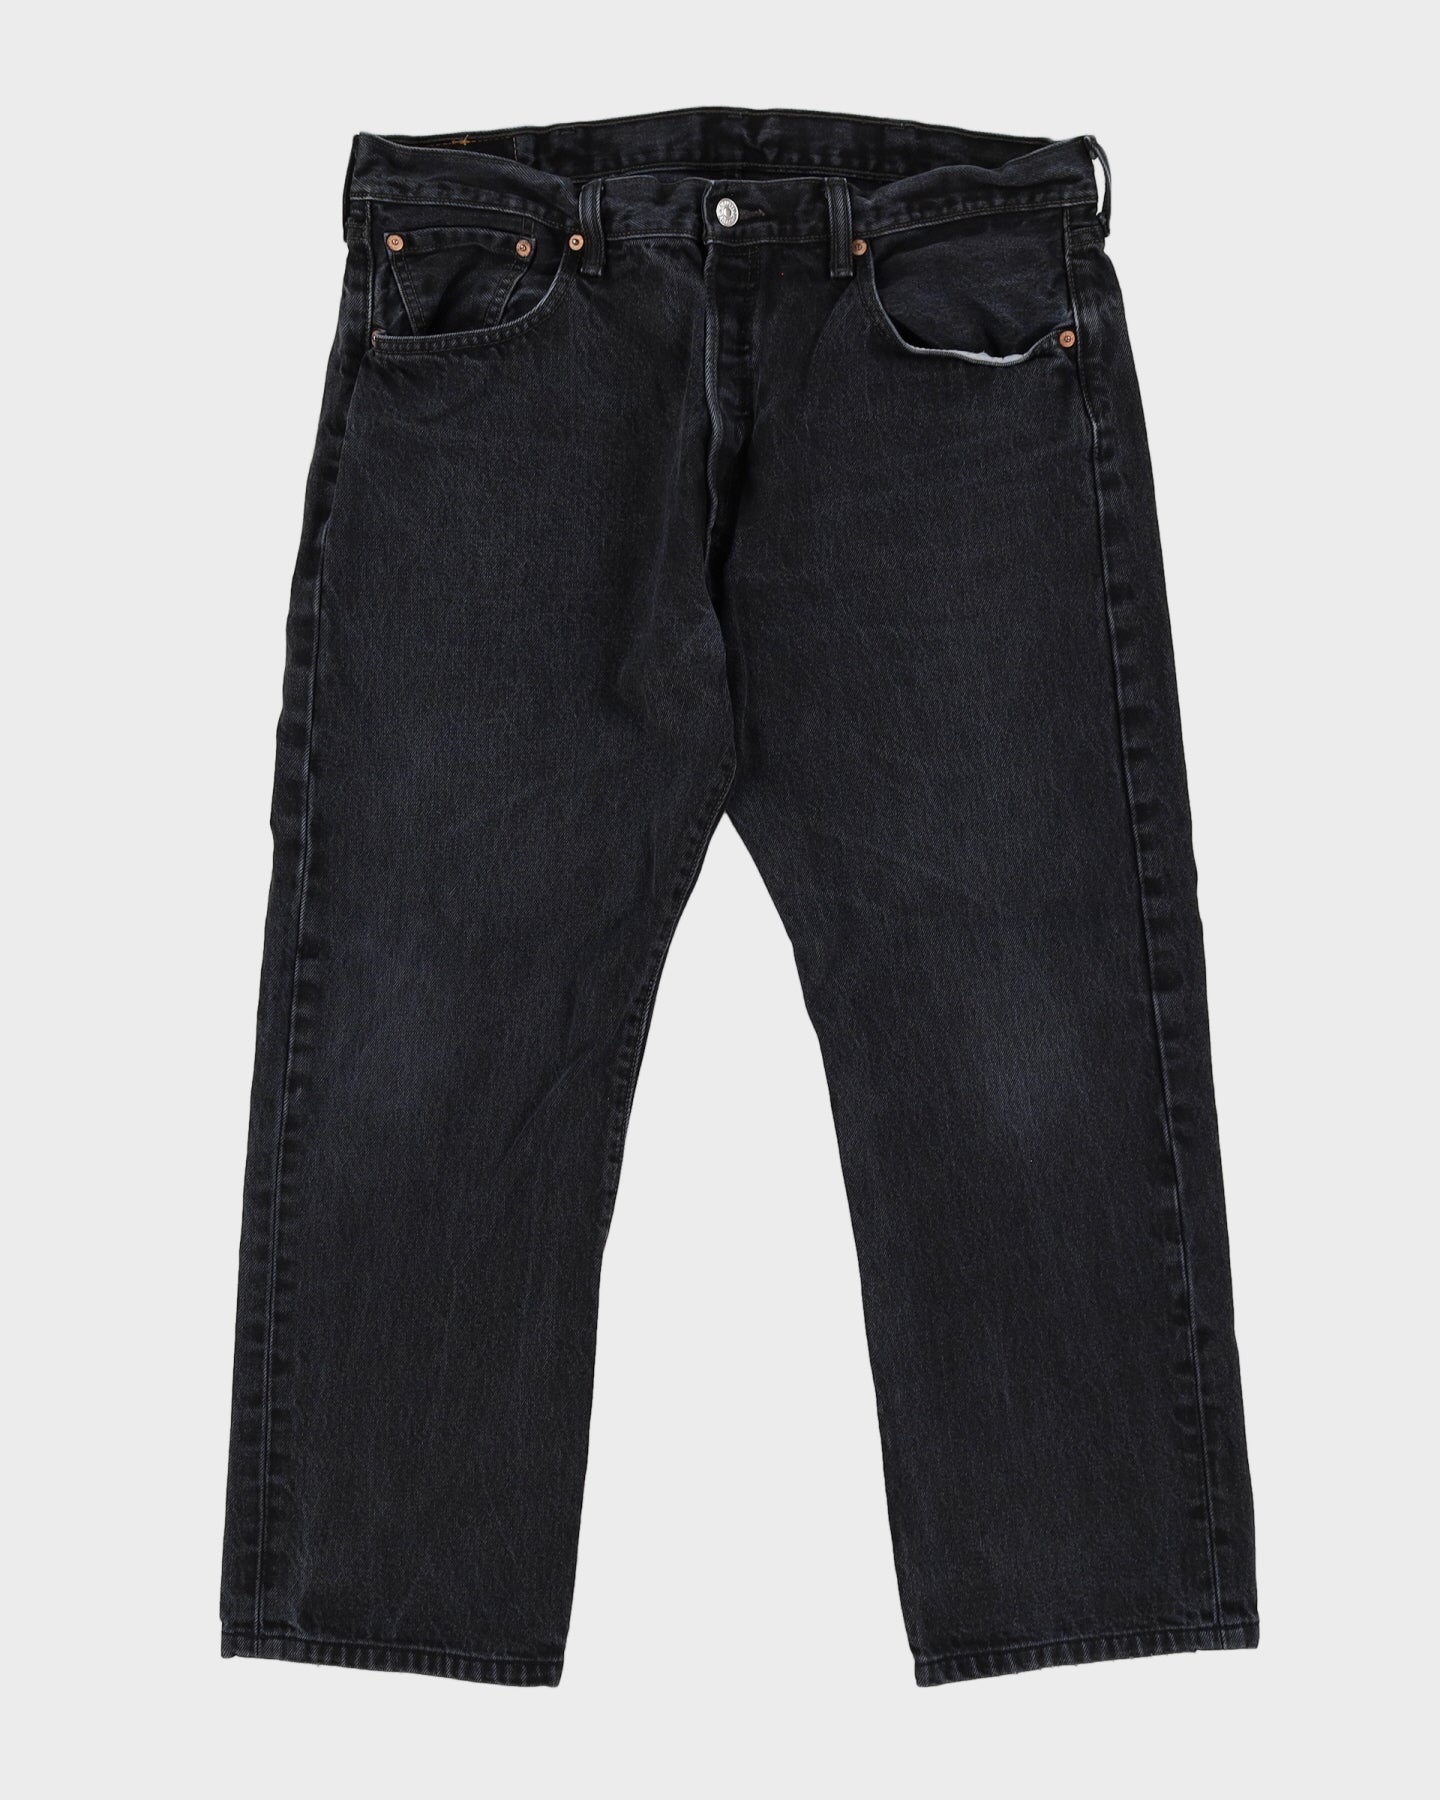 Levi's 501 Black Dark Wash Jeans - W38 L27